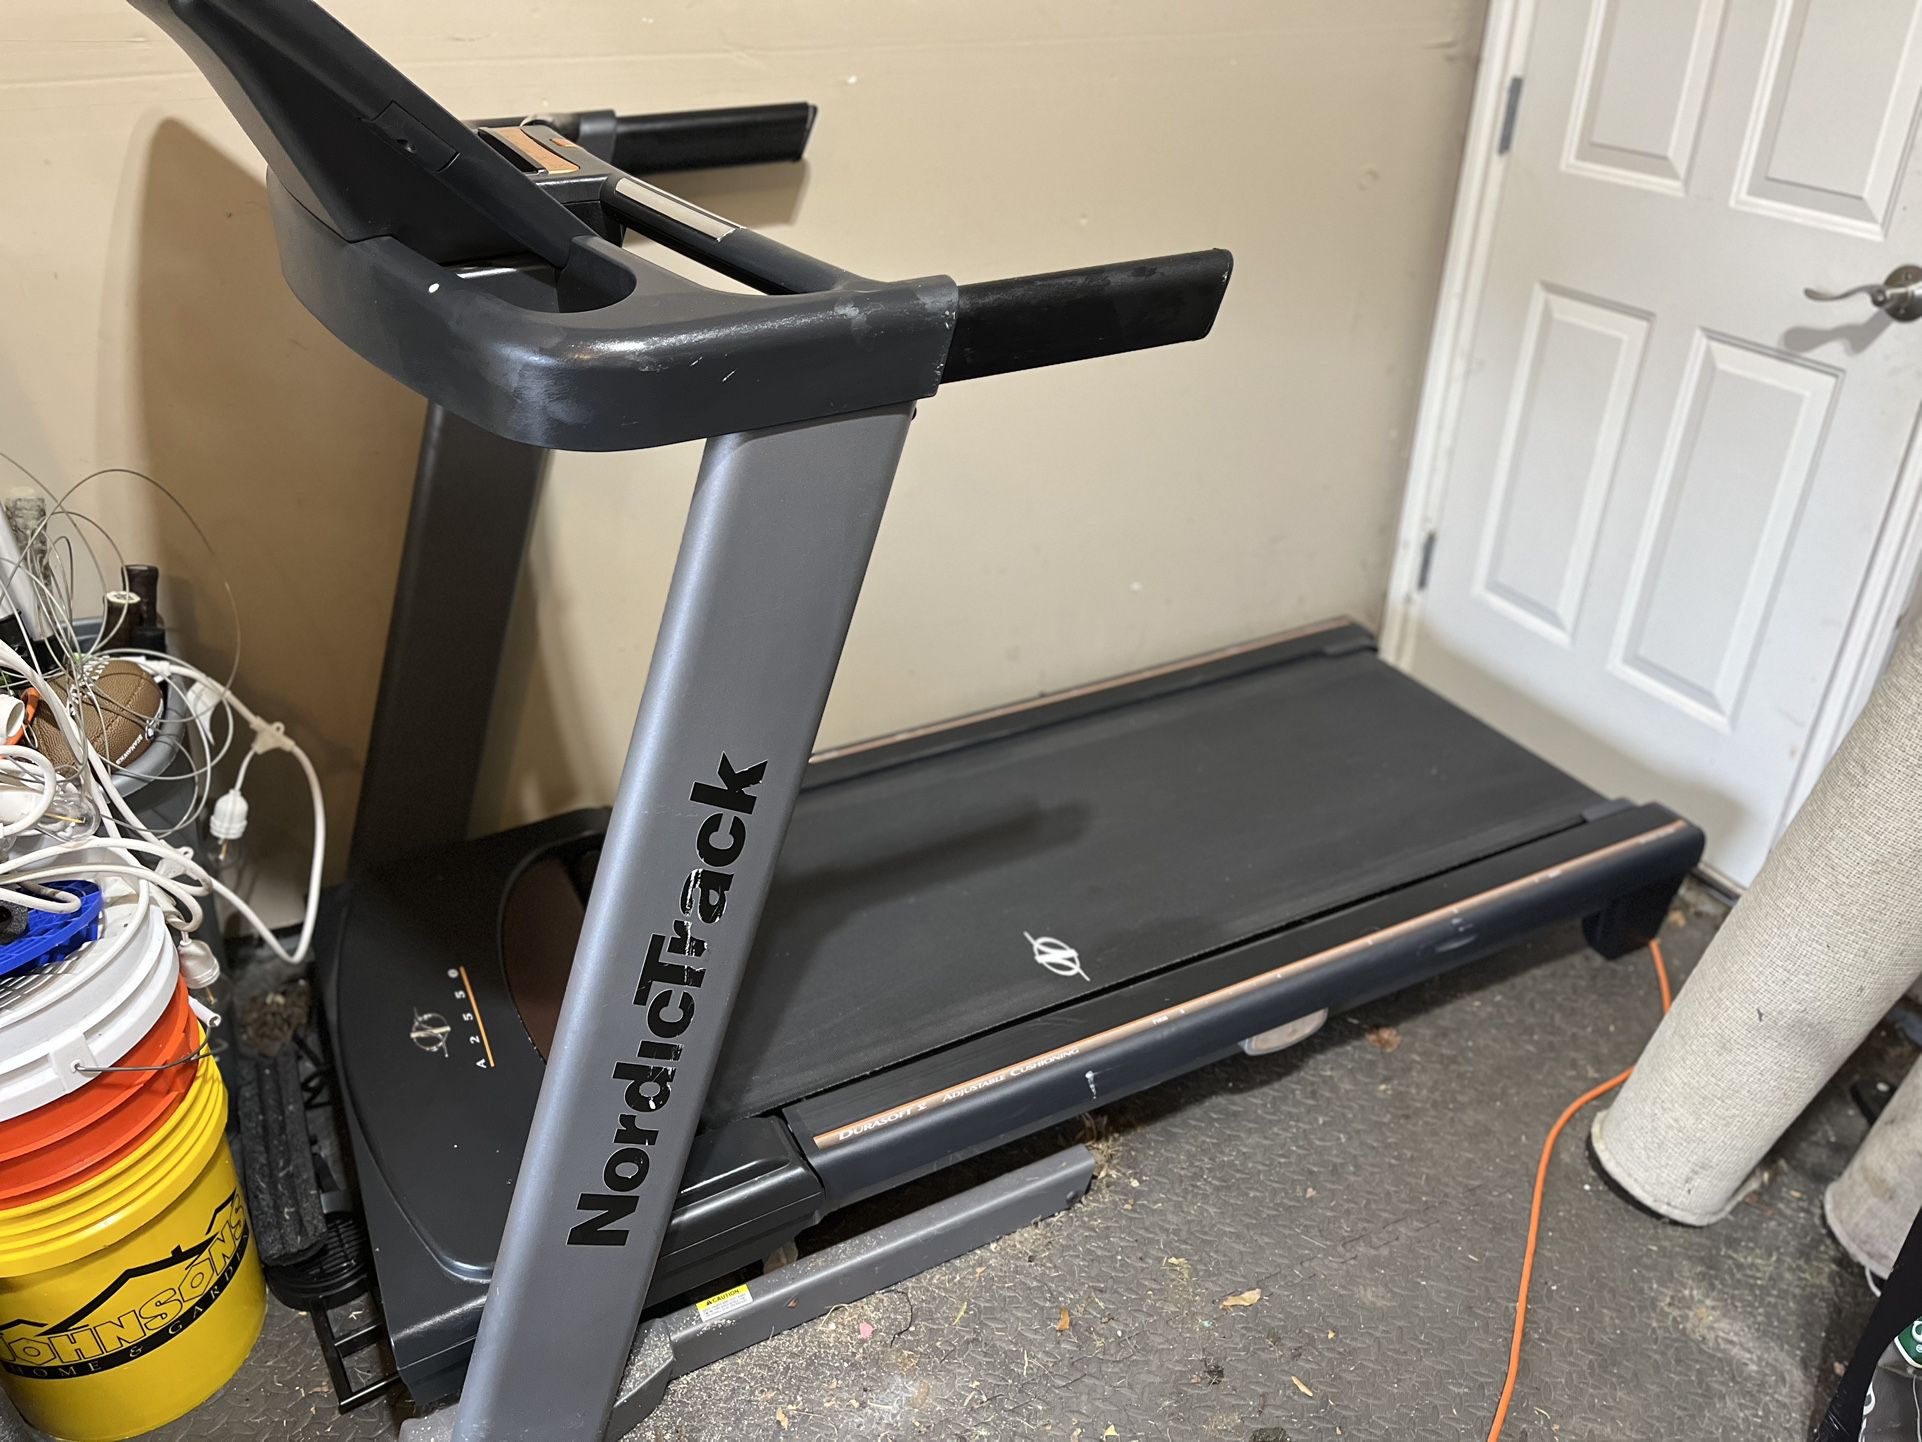 NordicTrack A2550 Treadmill